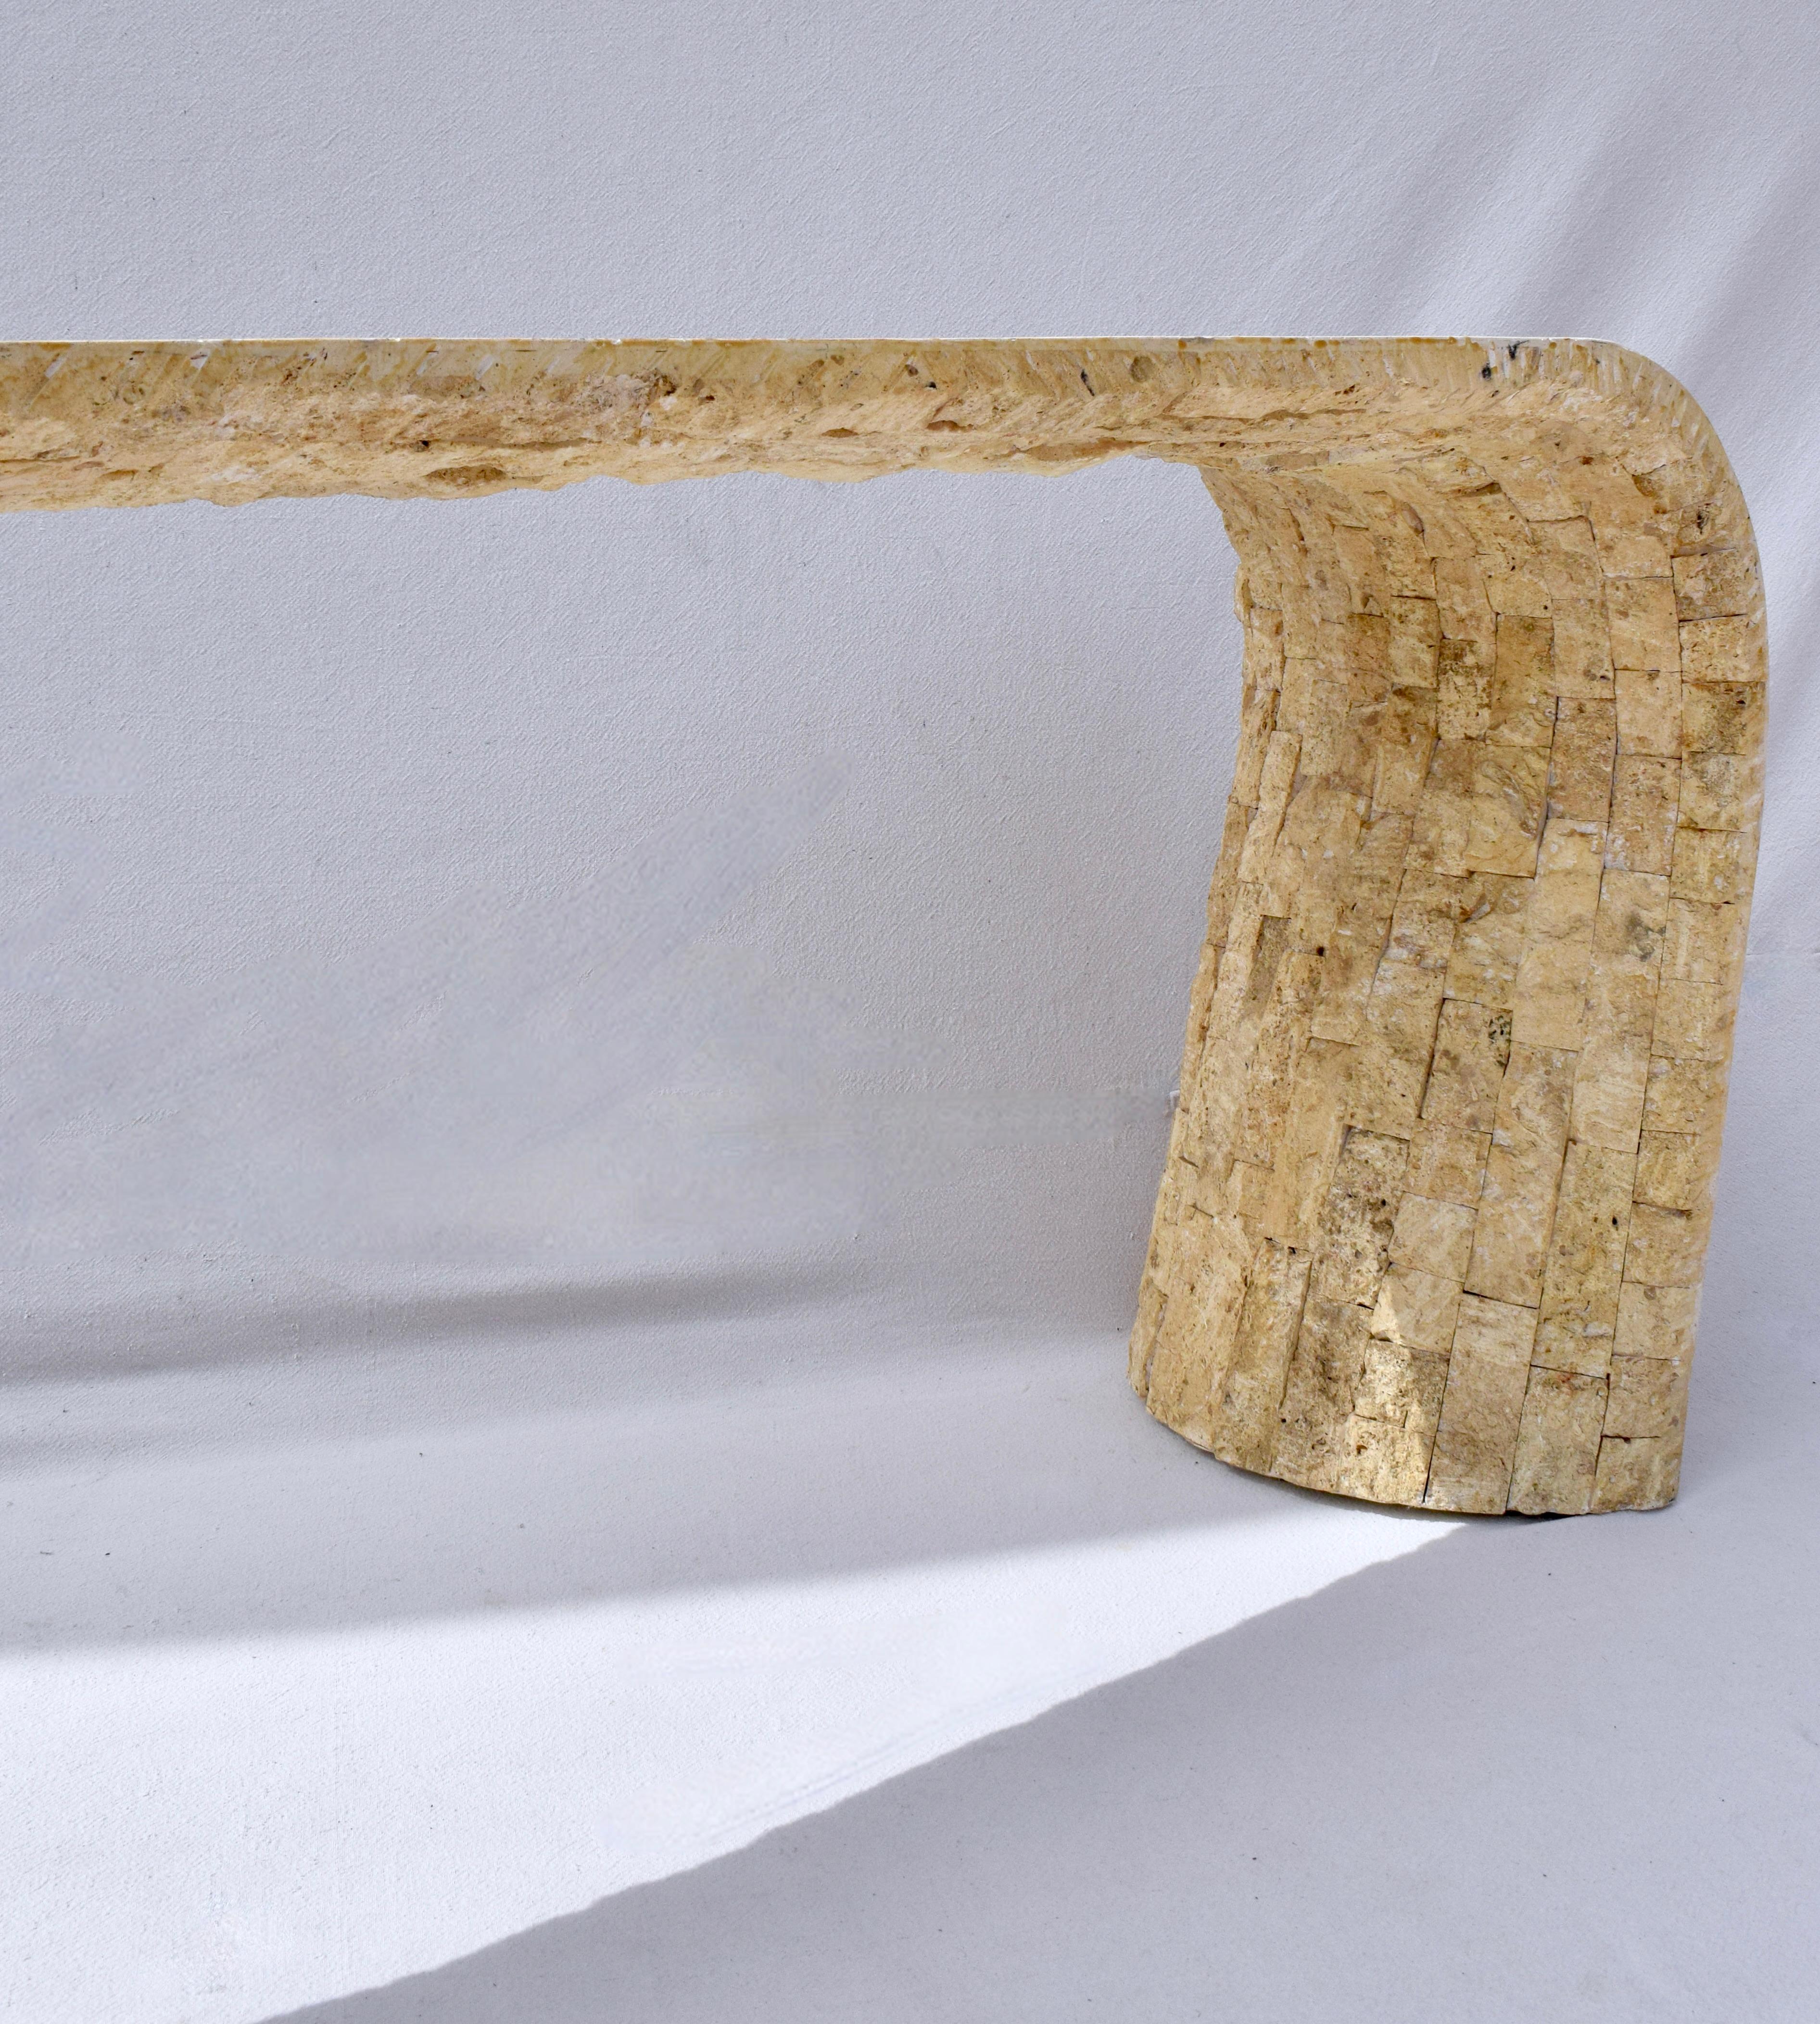 Remarquable table console en pierre tessellée de style méditerranéen, vers les années 1970, construite en pierre fossilisée avec des surfaces à la fois lisses et rugueuses. Notre séance photo a eu lieu pendant l'éclipse solaire de 2024. La lumière